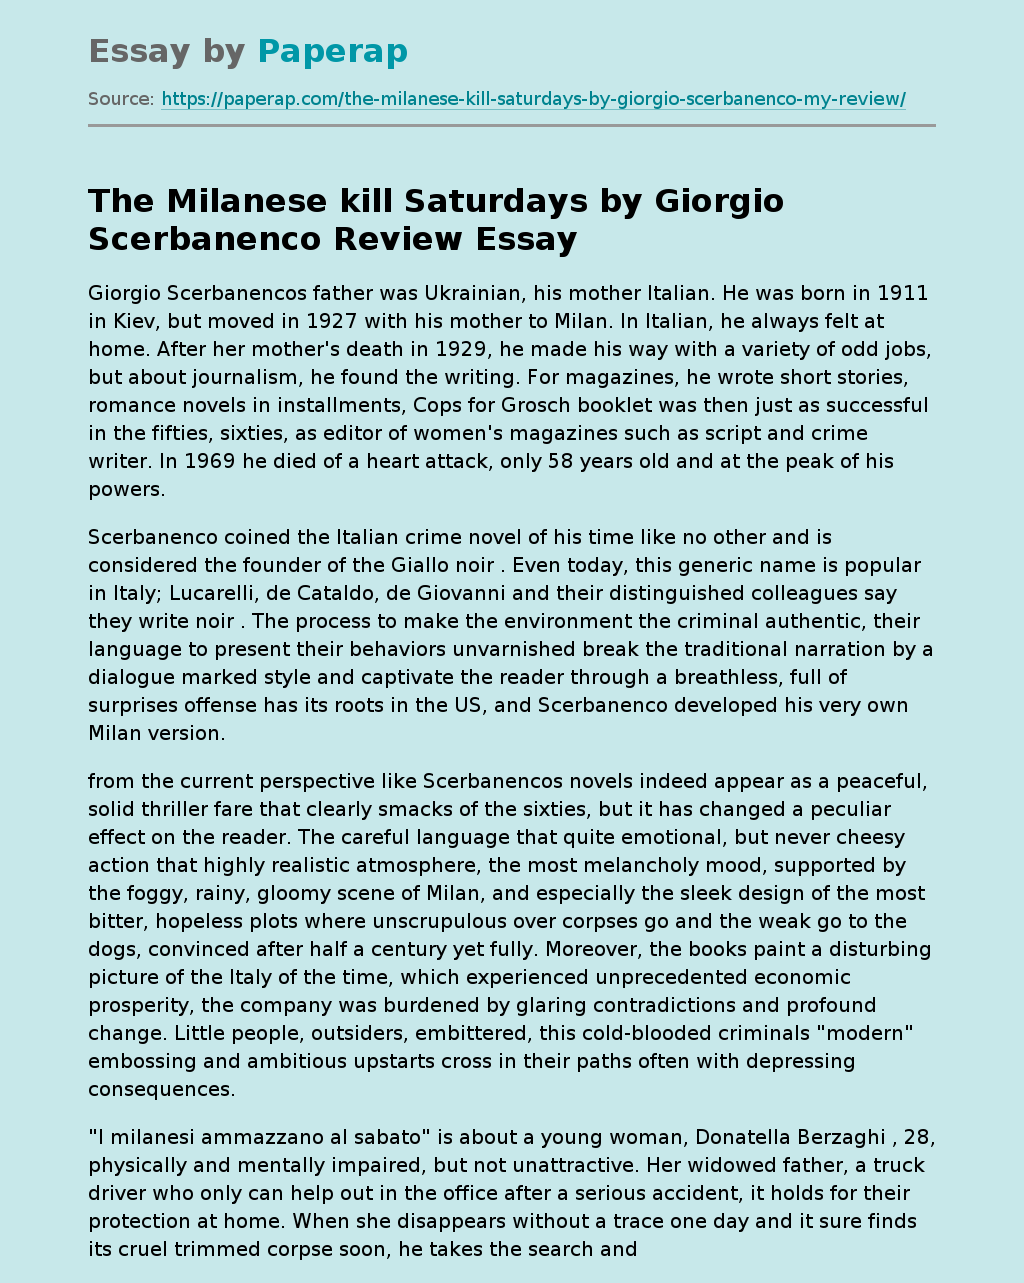 The Milanese Kill Saturdays by Giorgio Scerbanenco Review